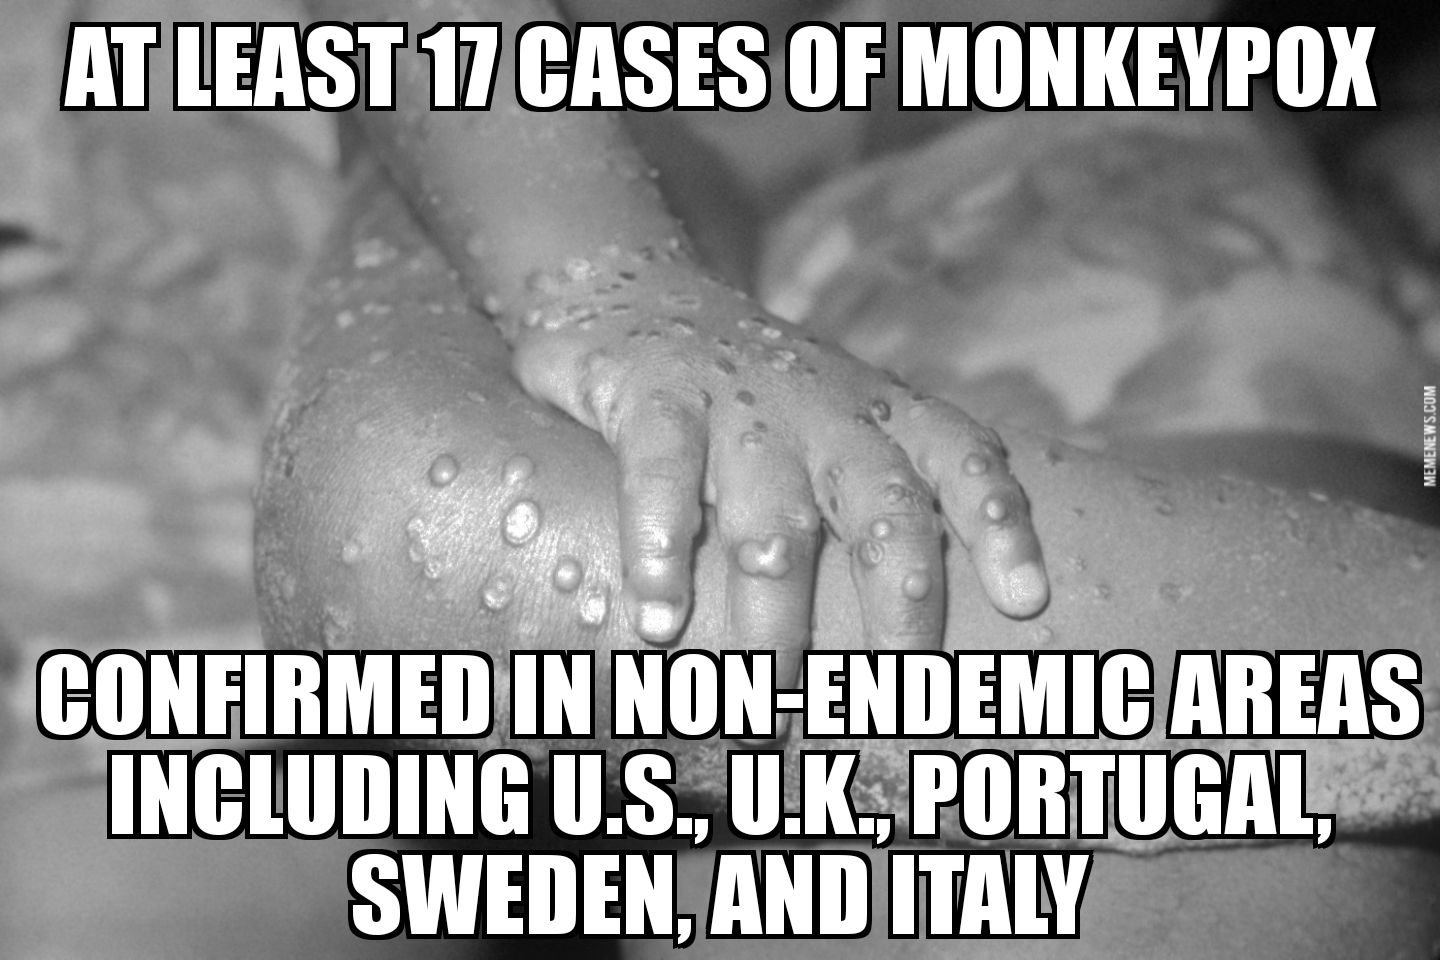 Monkeypox cases spread